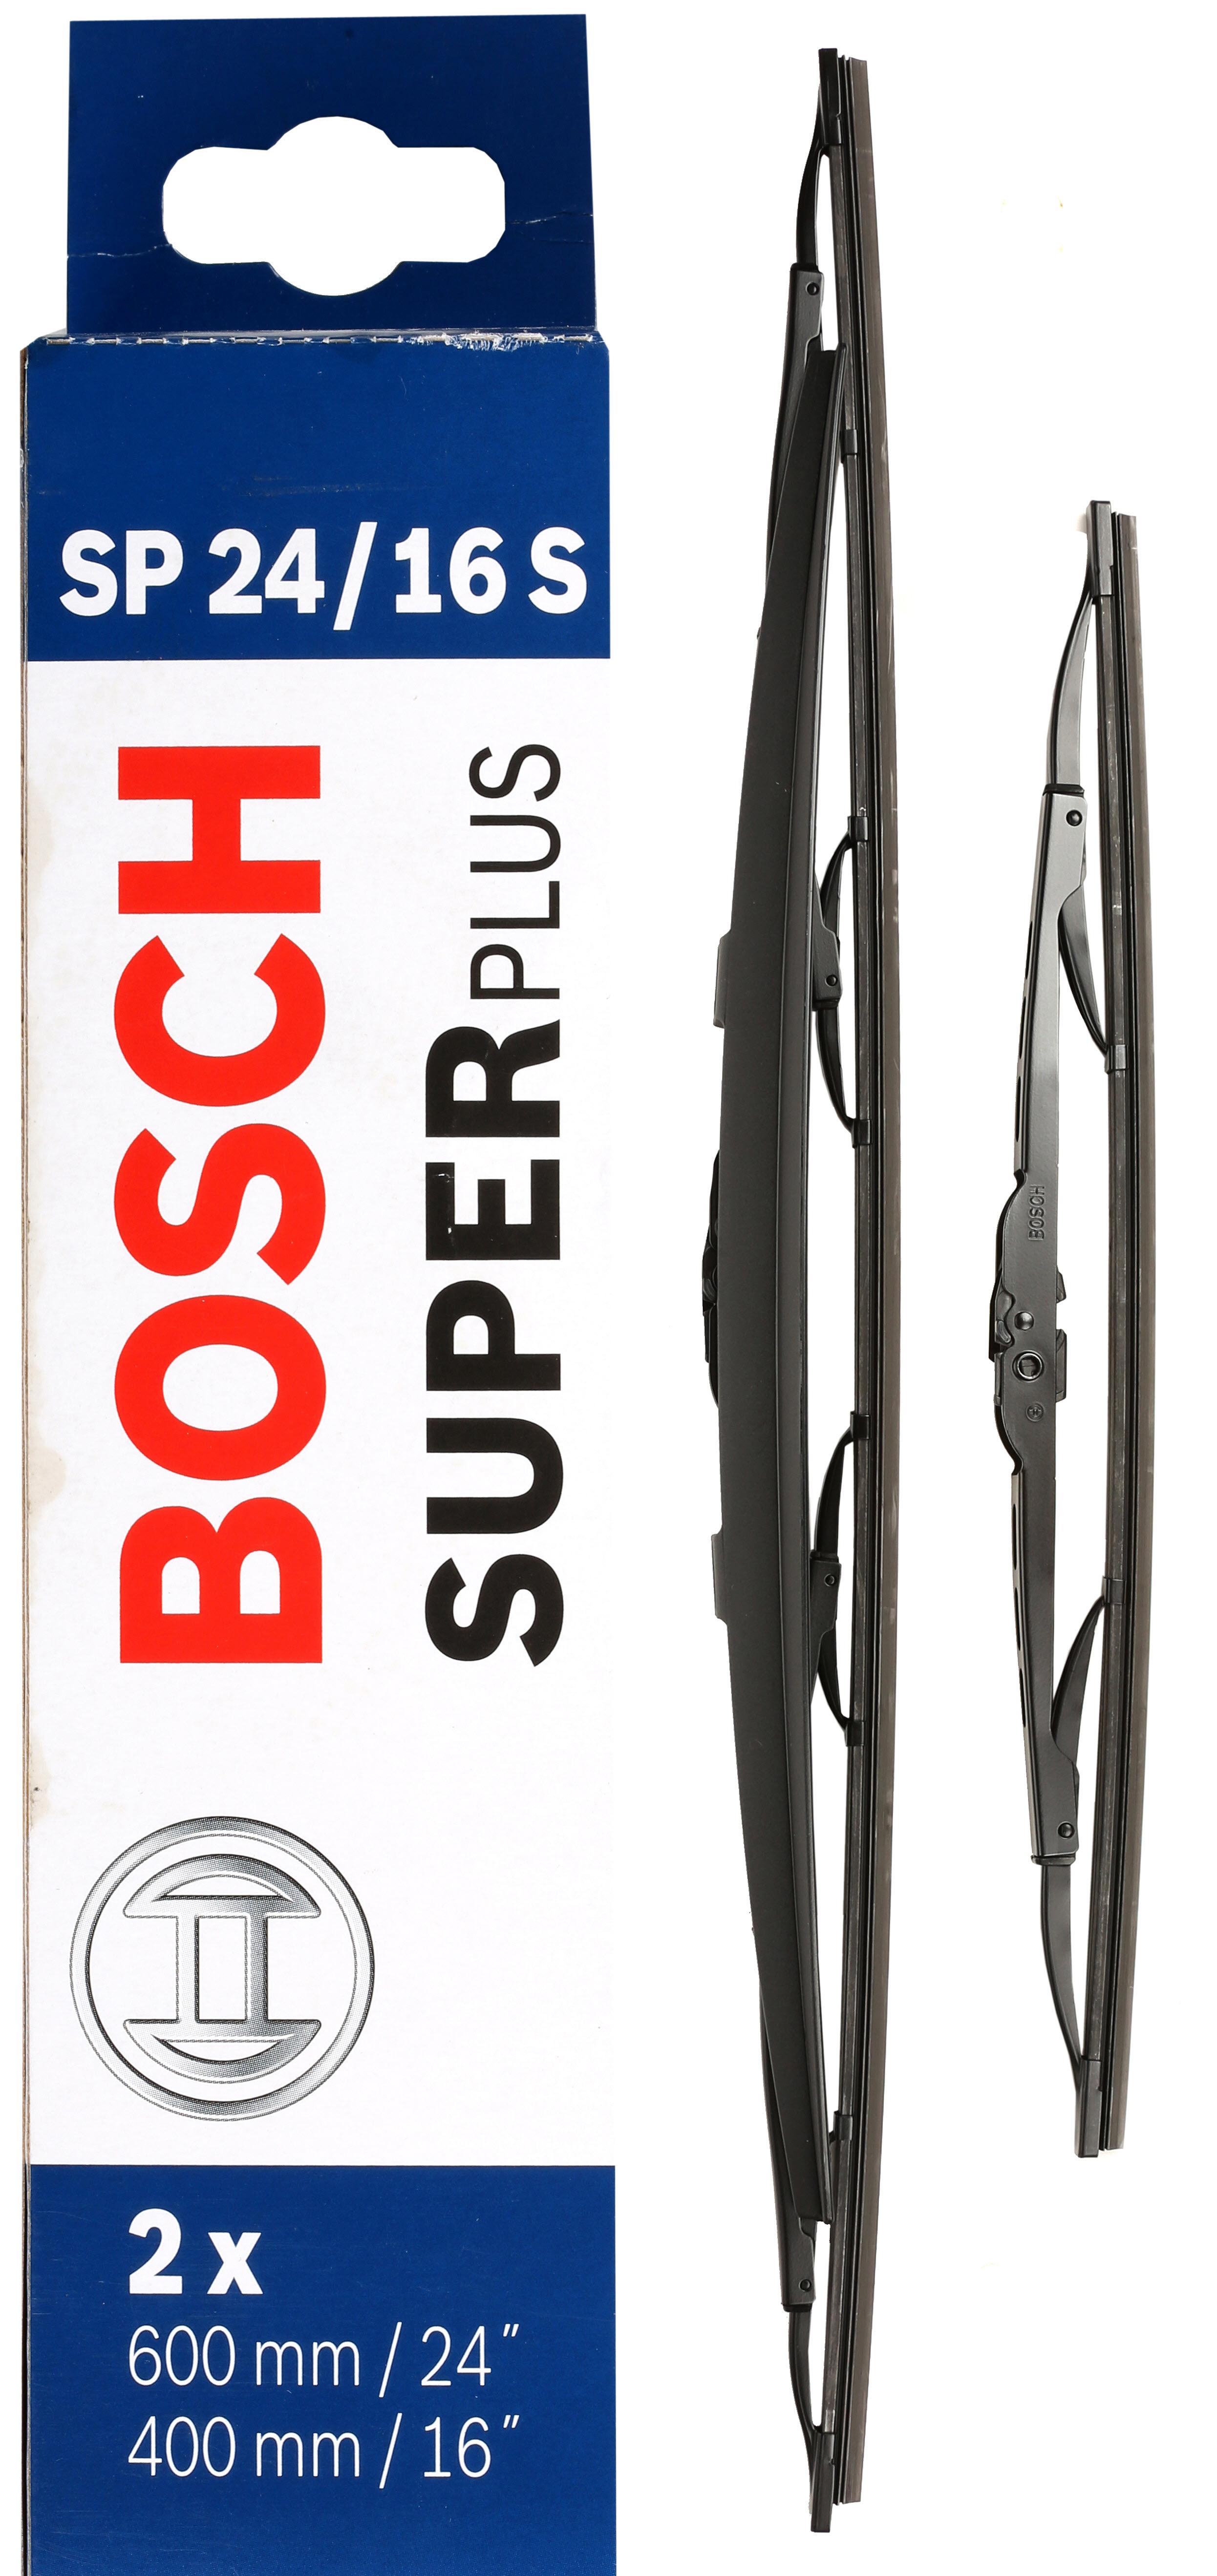 Bosch Sp24/16S Wiper Blades - Front Pair